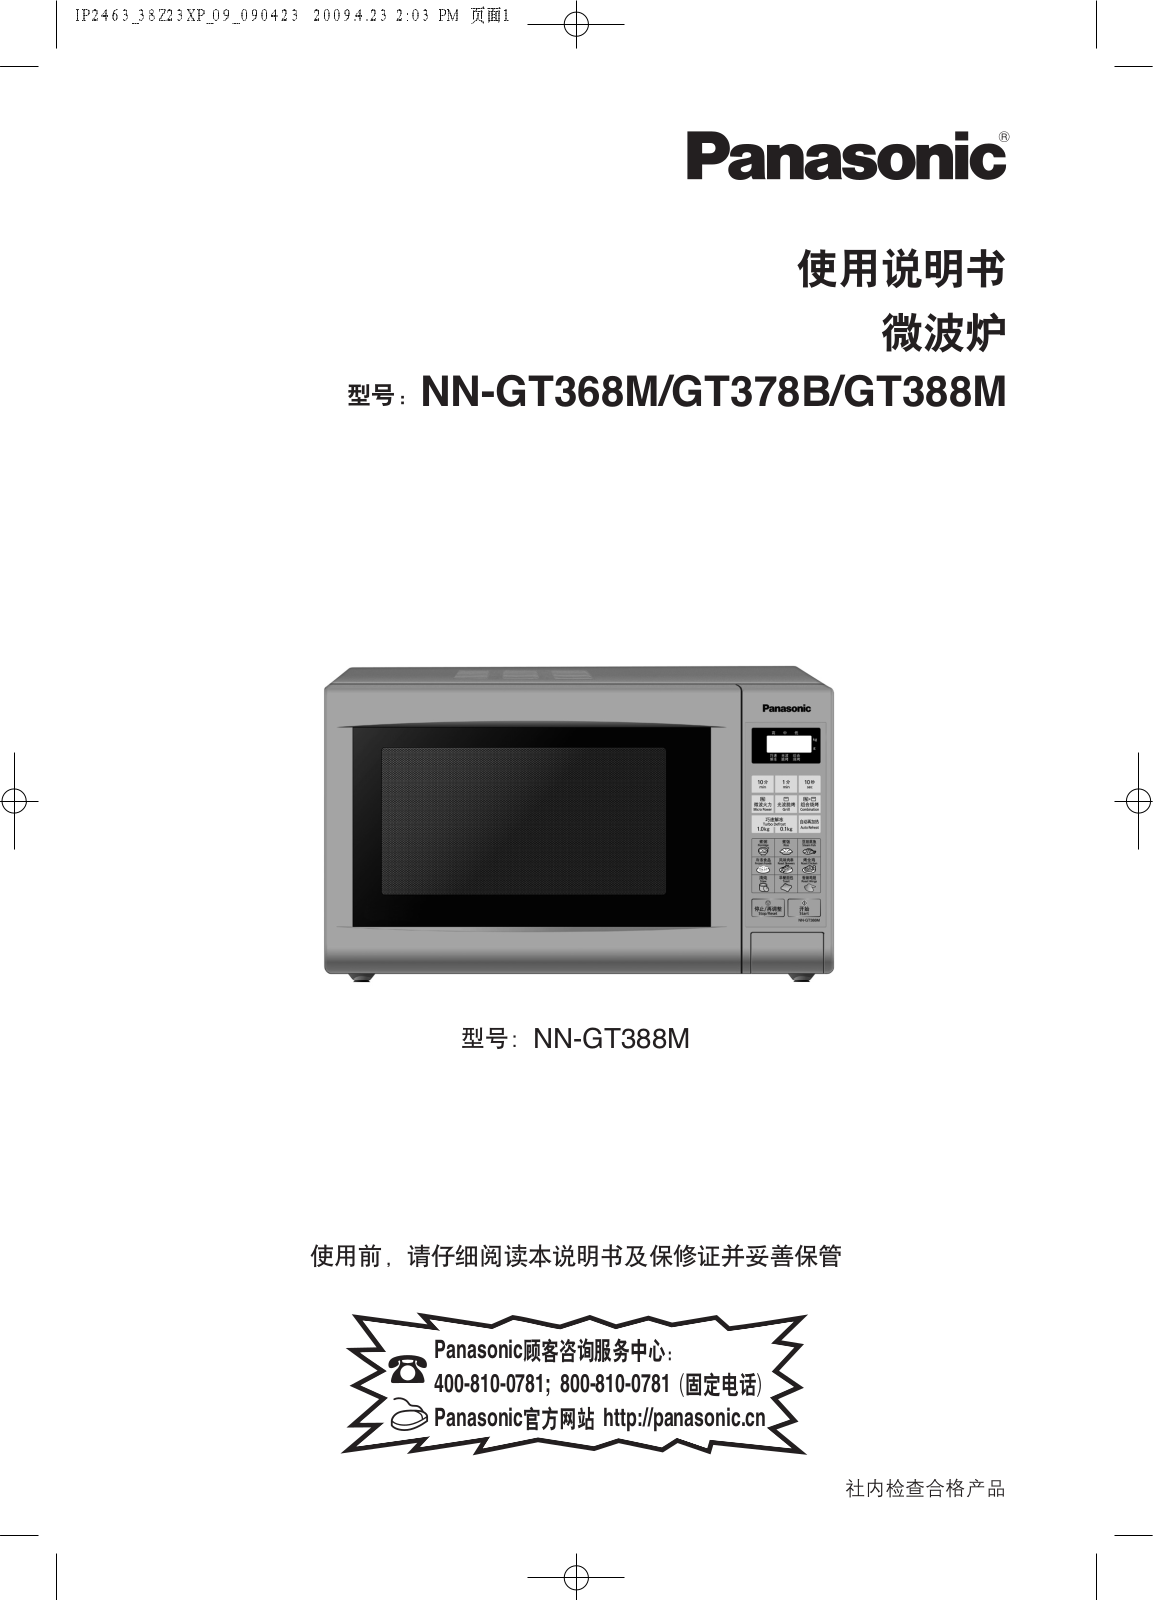 Panasonic NN-GT368M, NN-GT378B, NN-GT388M User Manual